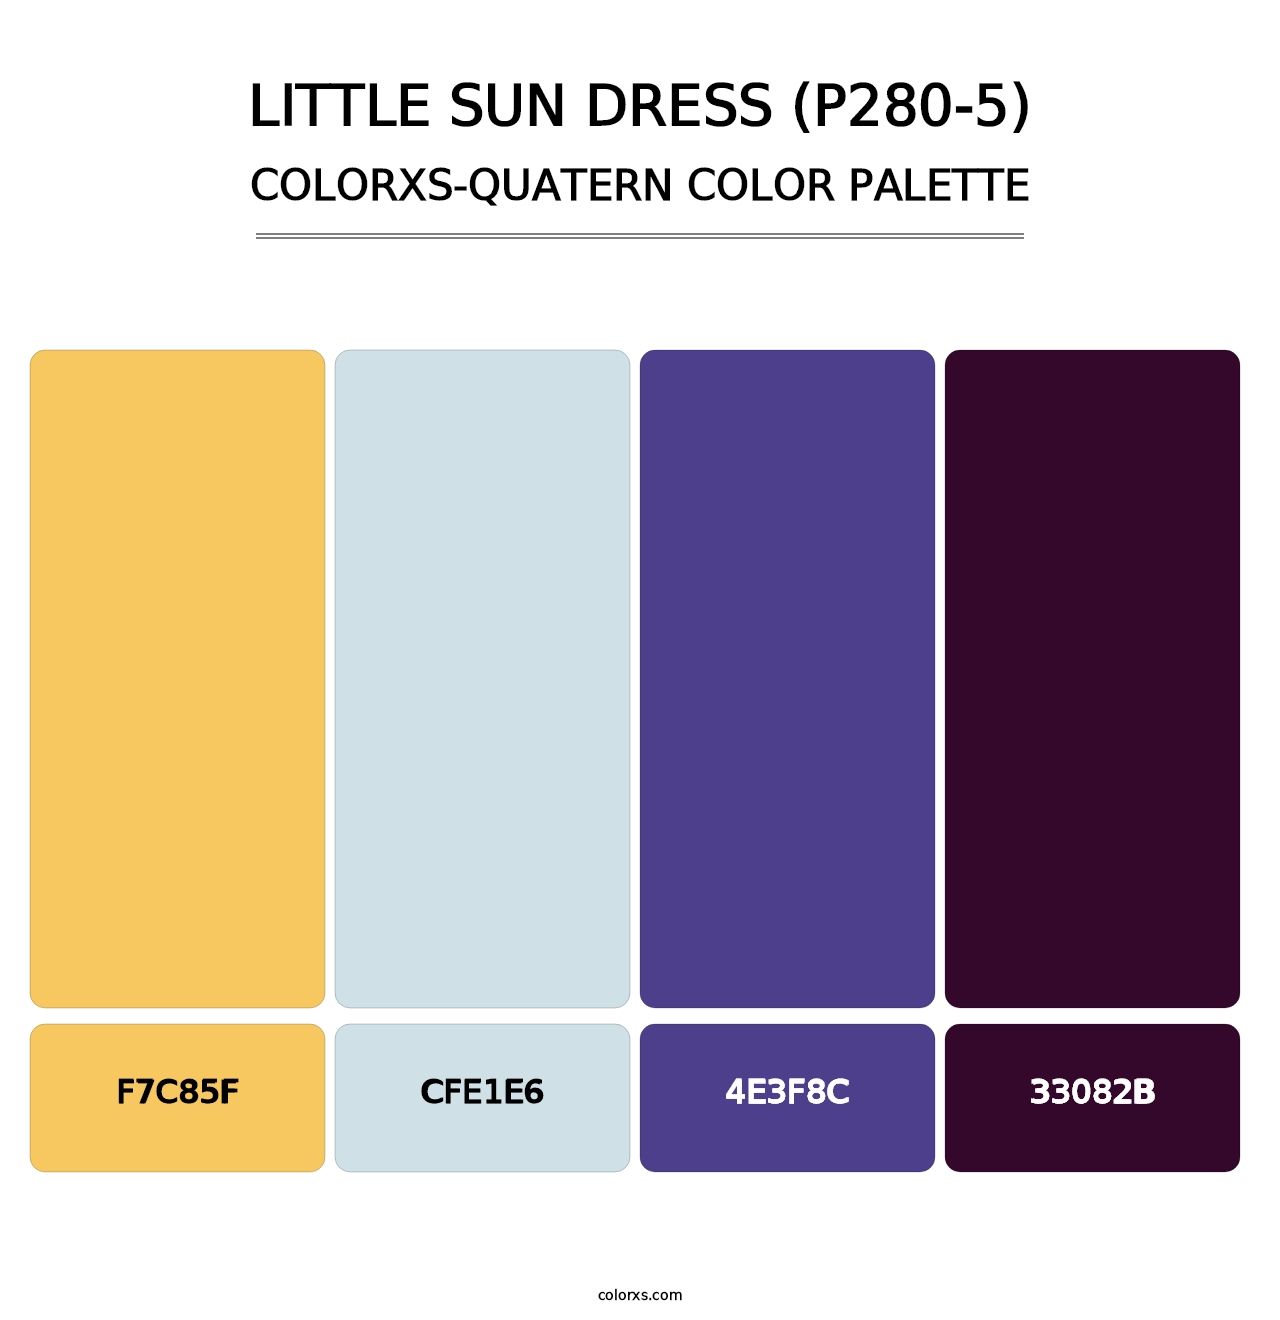 Little Sun Dress (P280-5) - Colorxs Quatern Palette